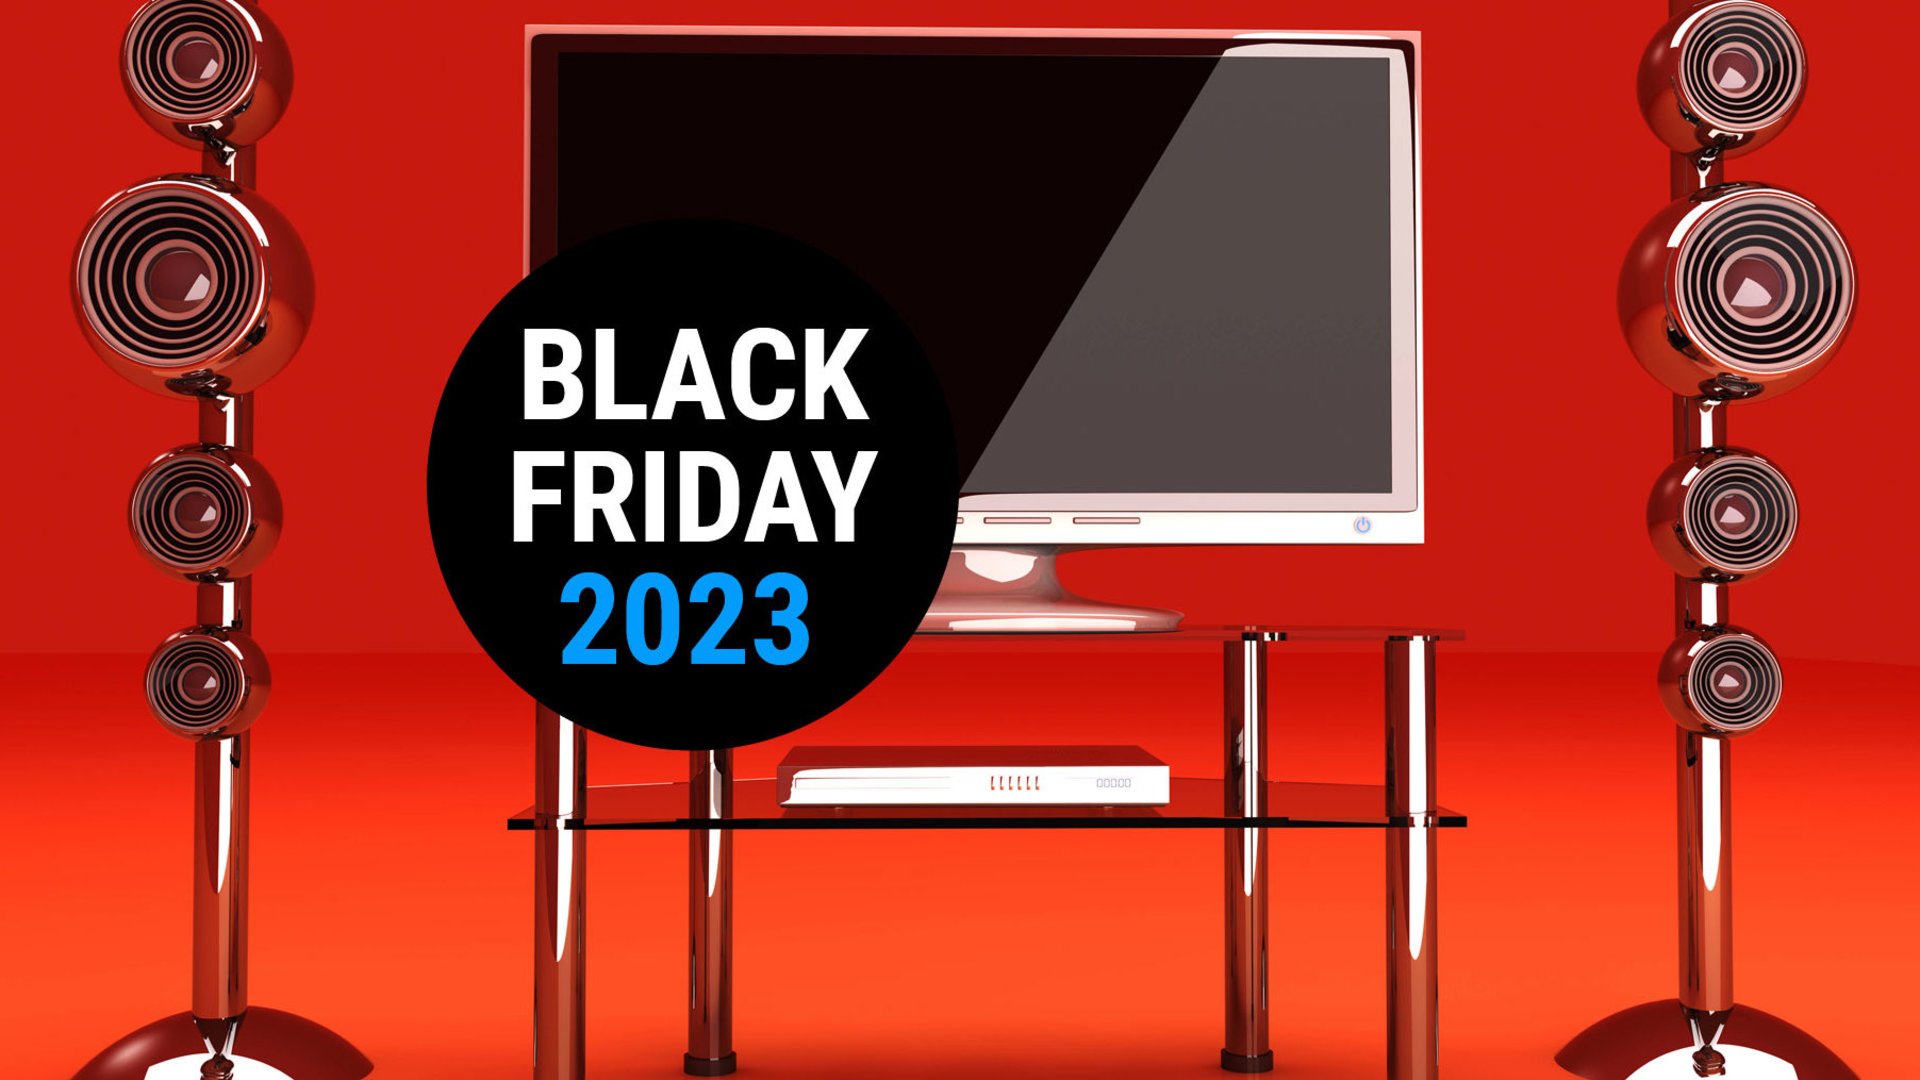 #Black Friday 2023 ist gestartet! Angebote bei Amazon, MediaMarkt und Co – unser Best-of heute